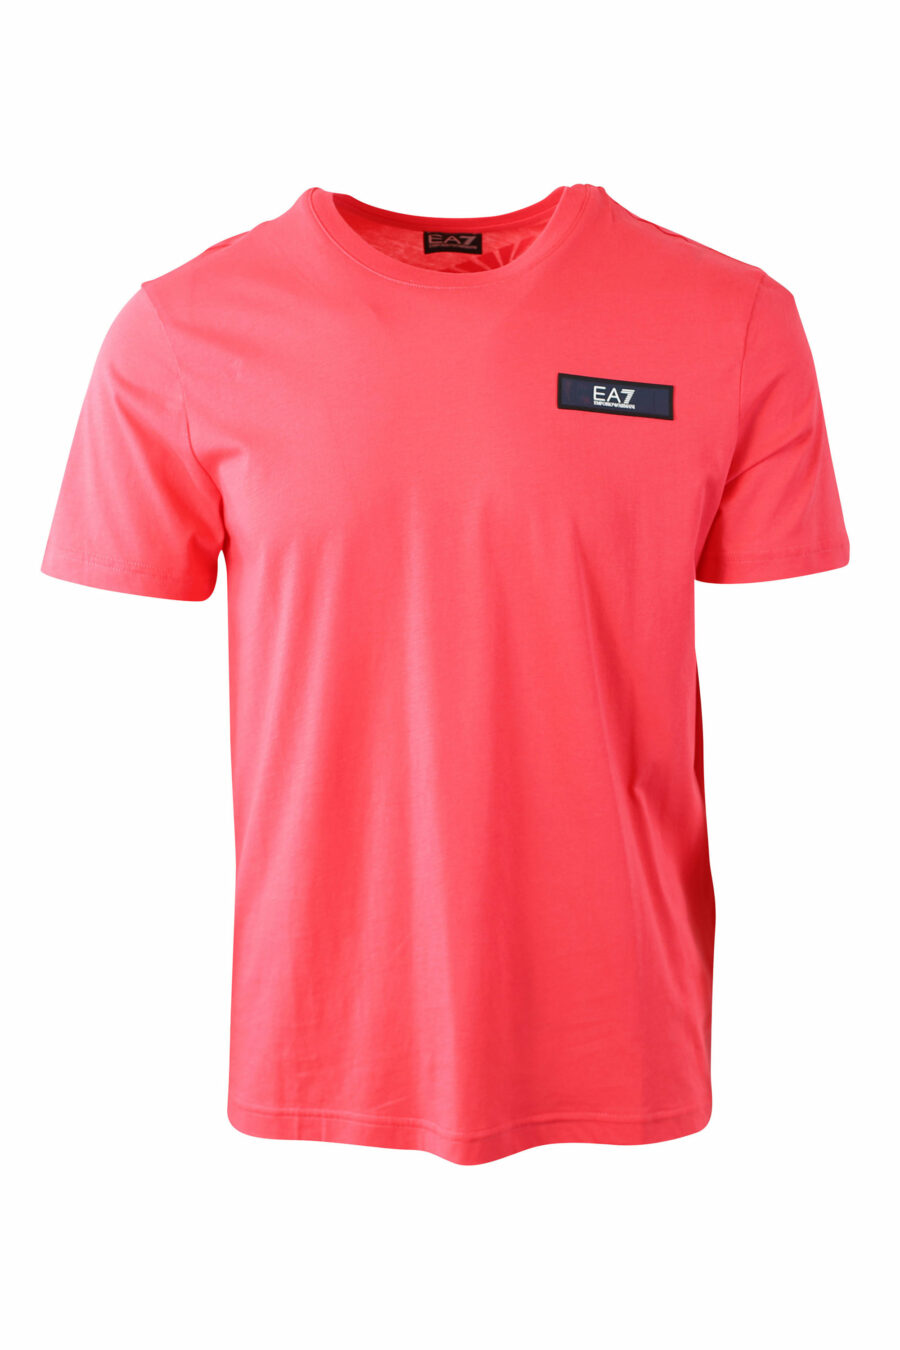 Camiseta color coral con minilogo en parche rectangular - IMG 0053 1